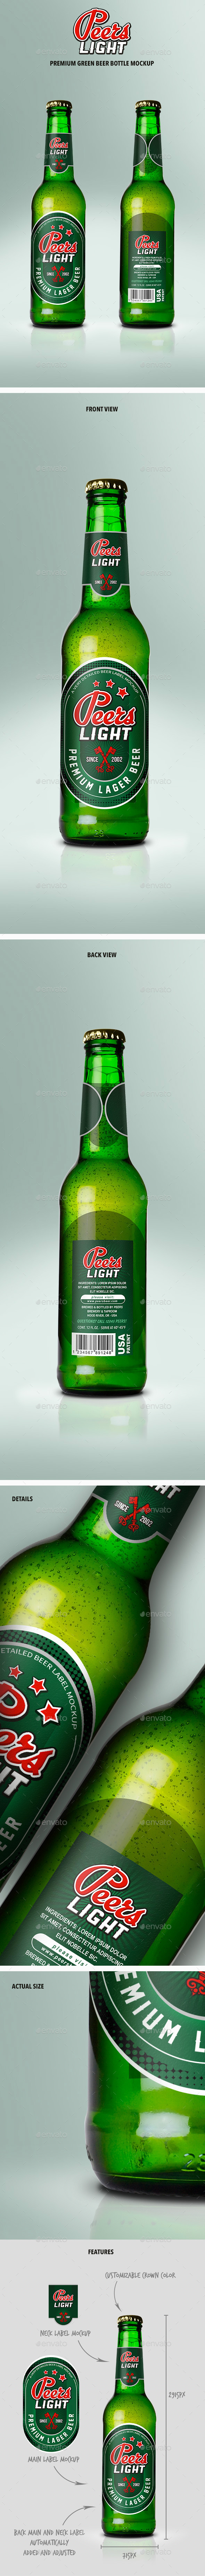 Premium Green Beer Bottle Mockup